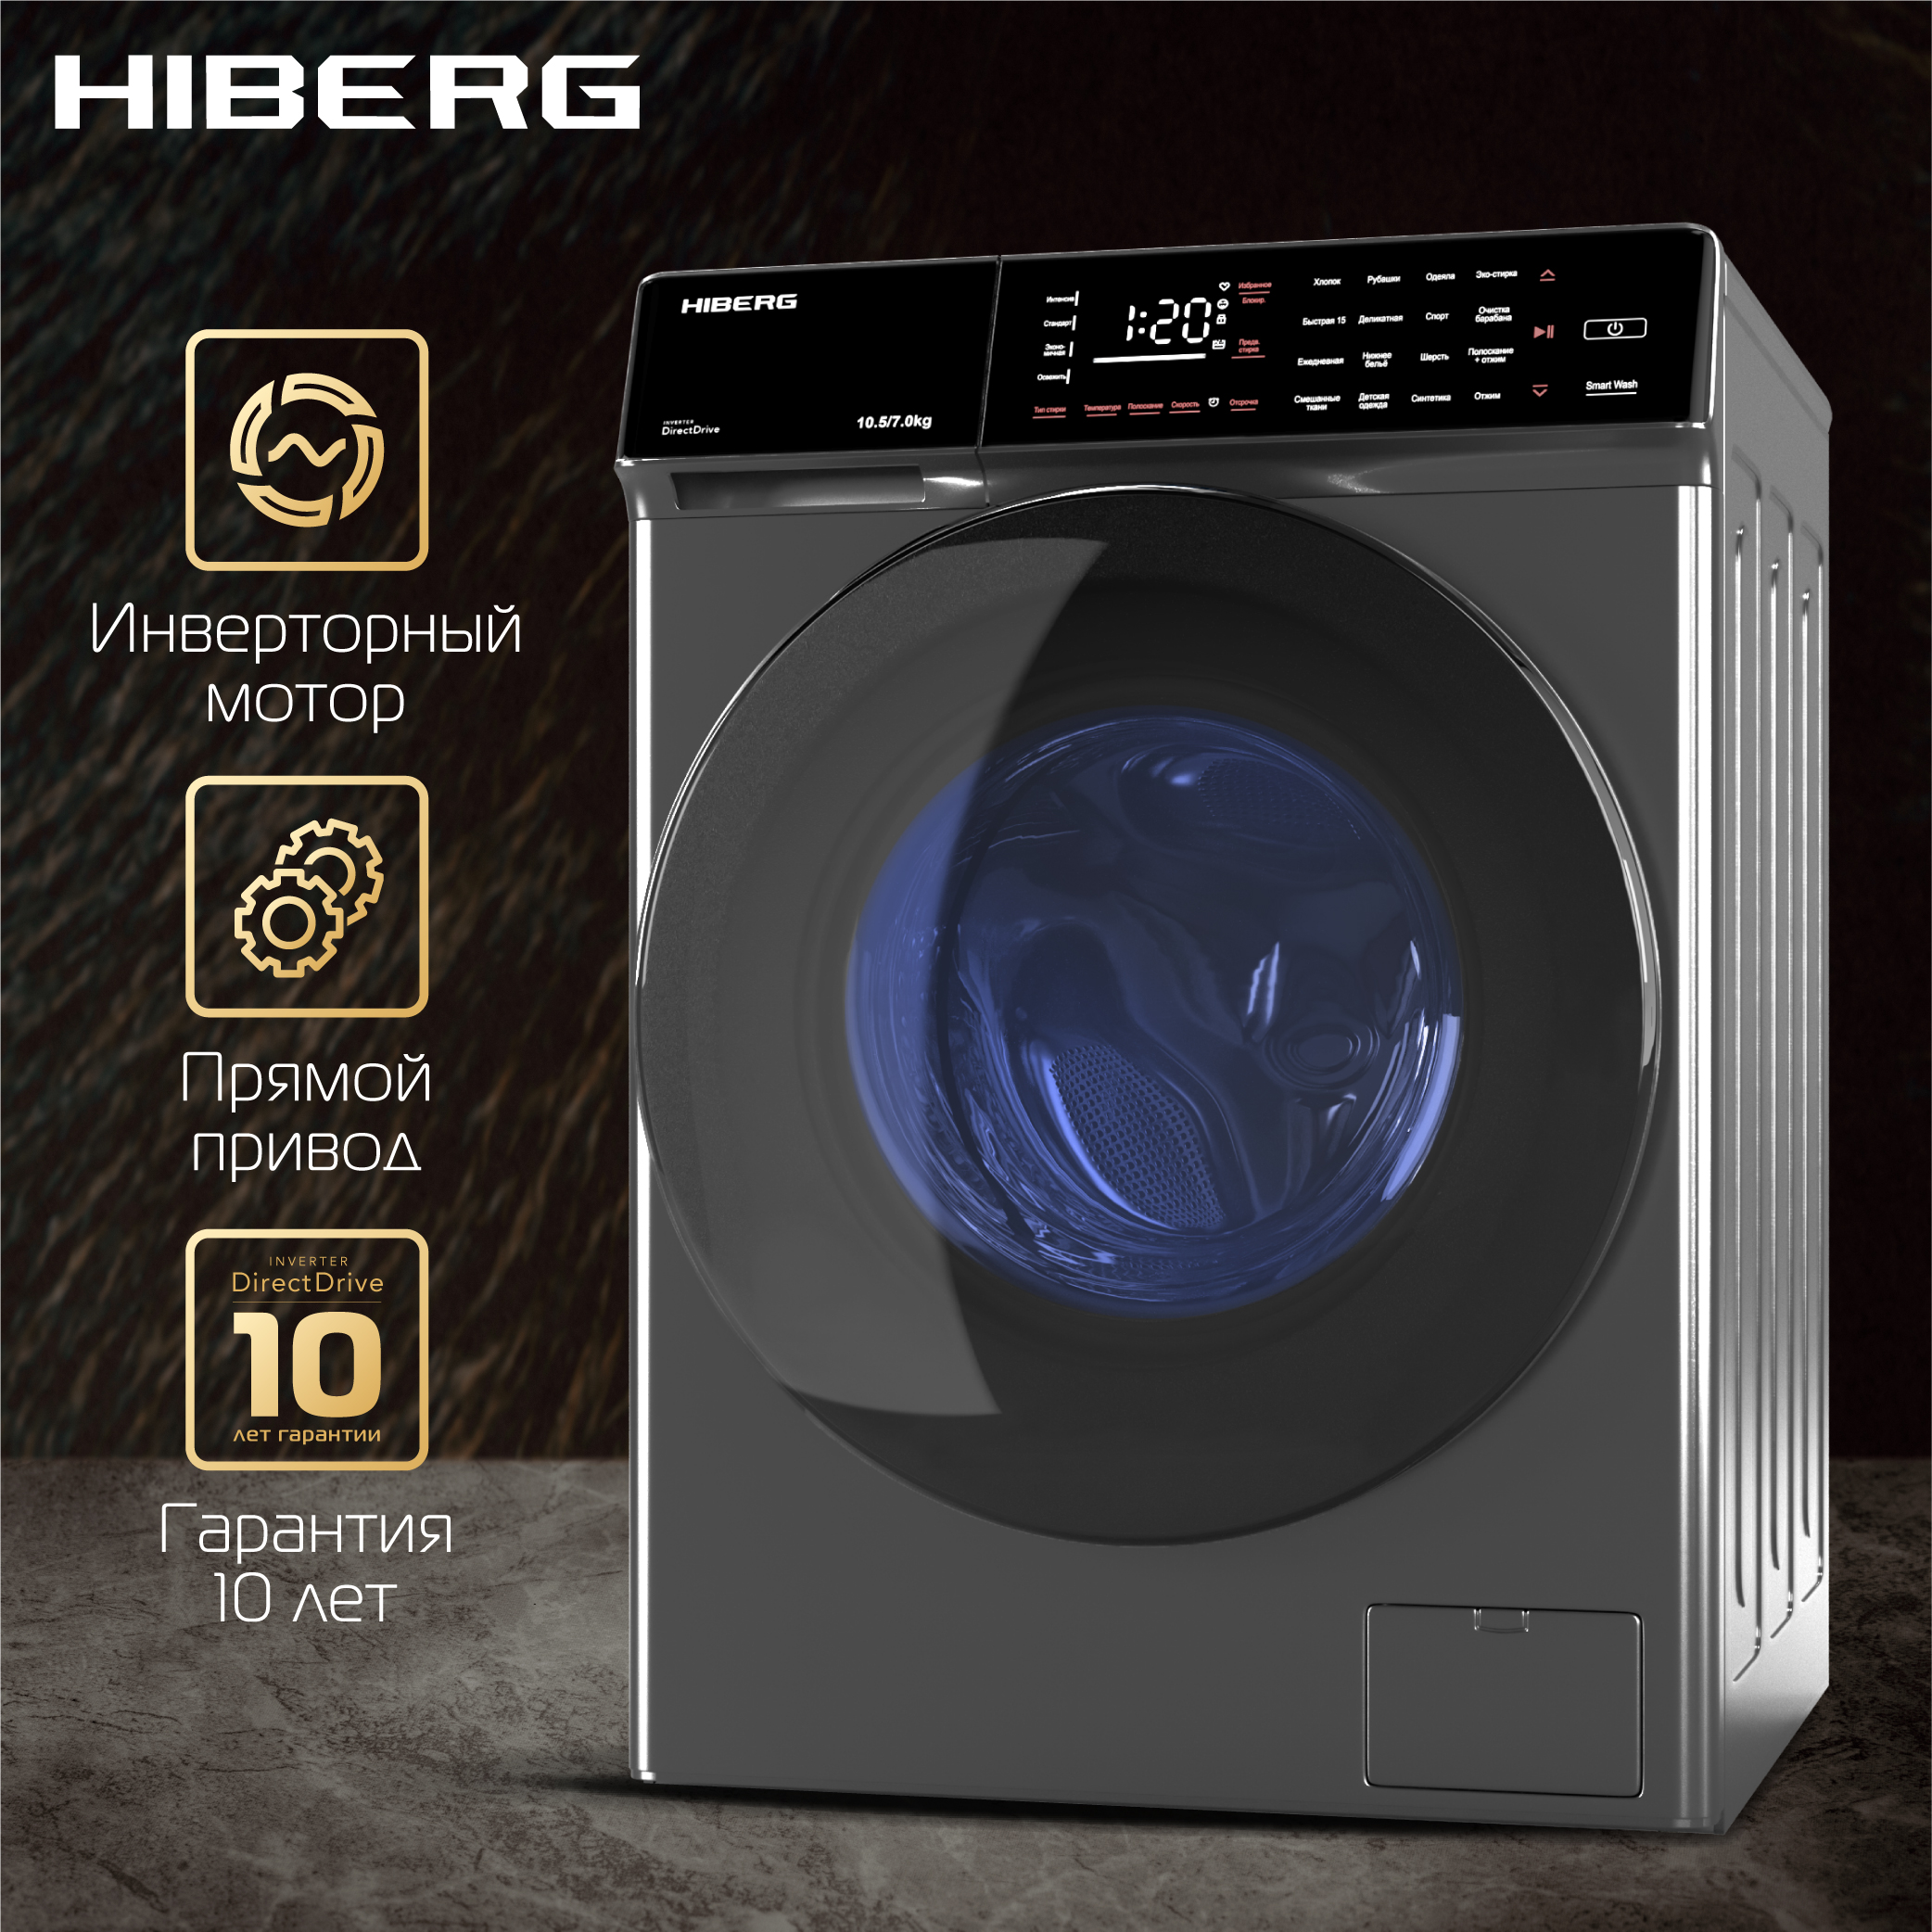 Стиральная машина Hiberg i-DDQ9 - 10714 Sd серебристый стиральная машина hiberg i ddq9 712 g